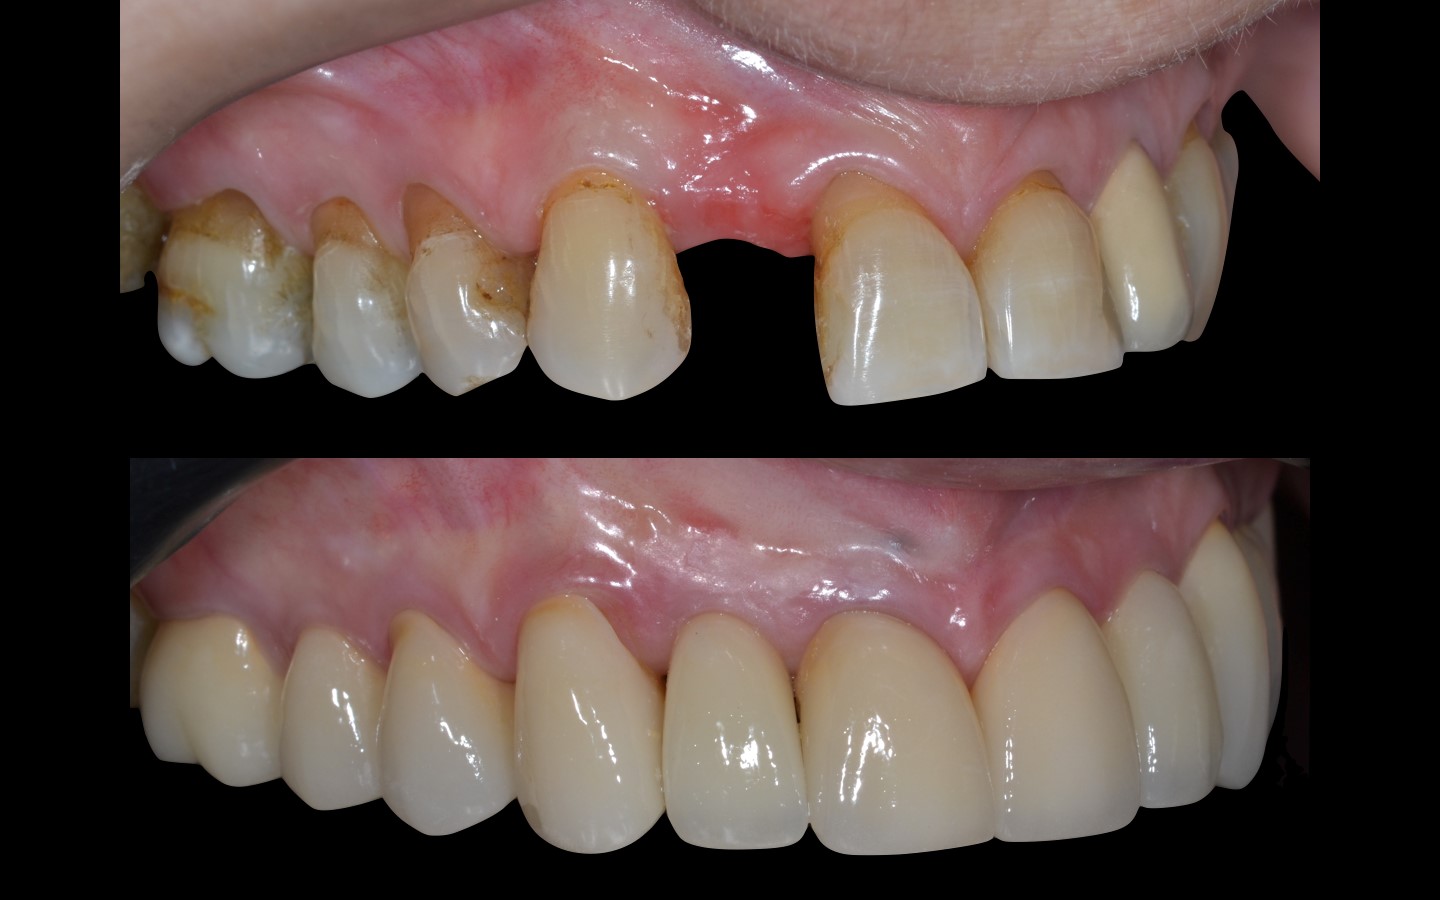 image25 - Reabilitação dento-alveolar com implante Arcsys, enxerto conjuntivo e substituto ósseo Nanosynt